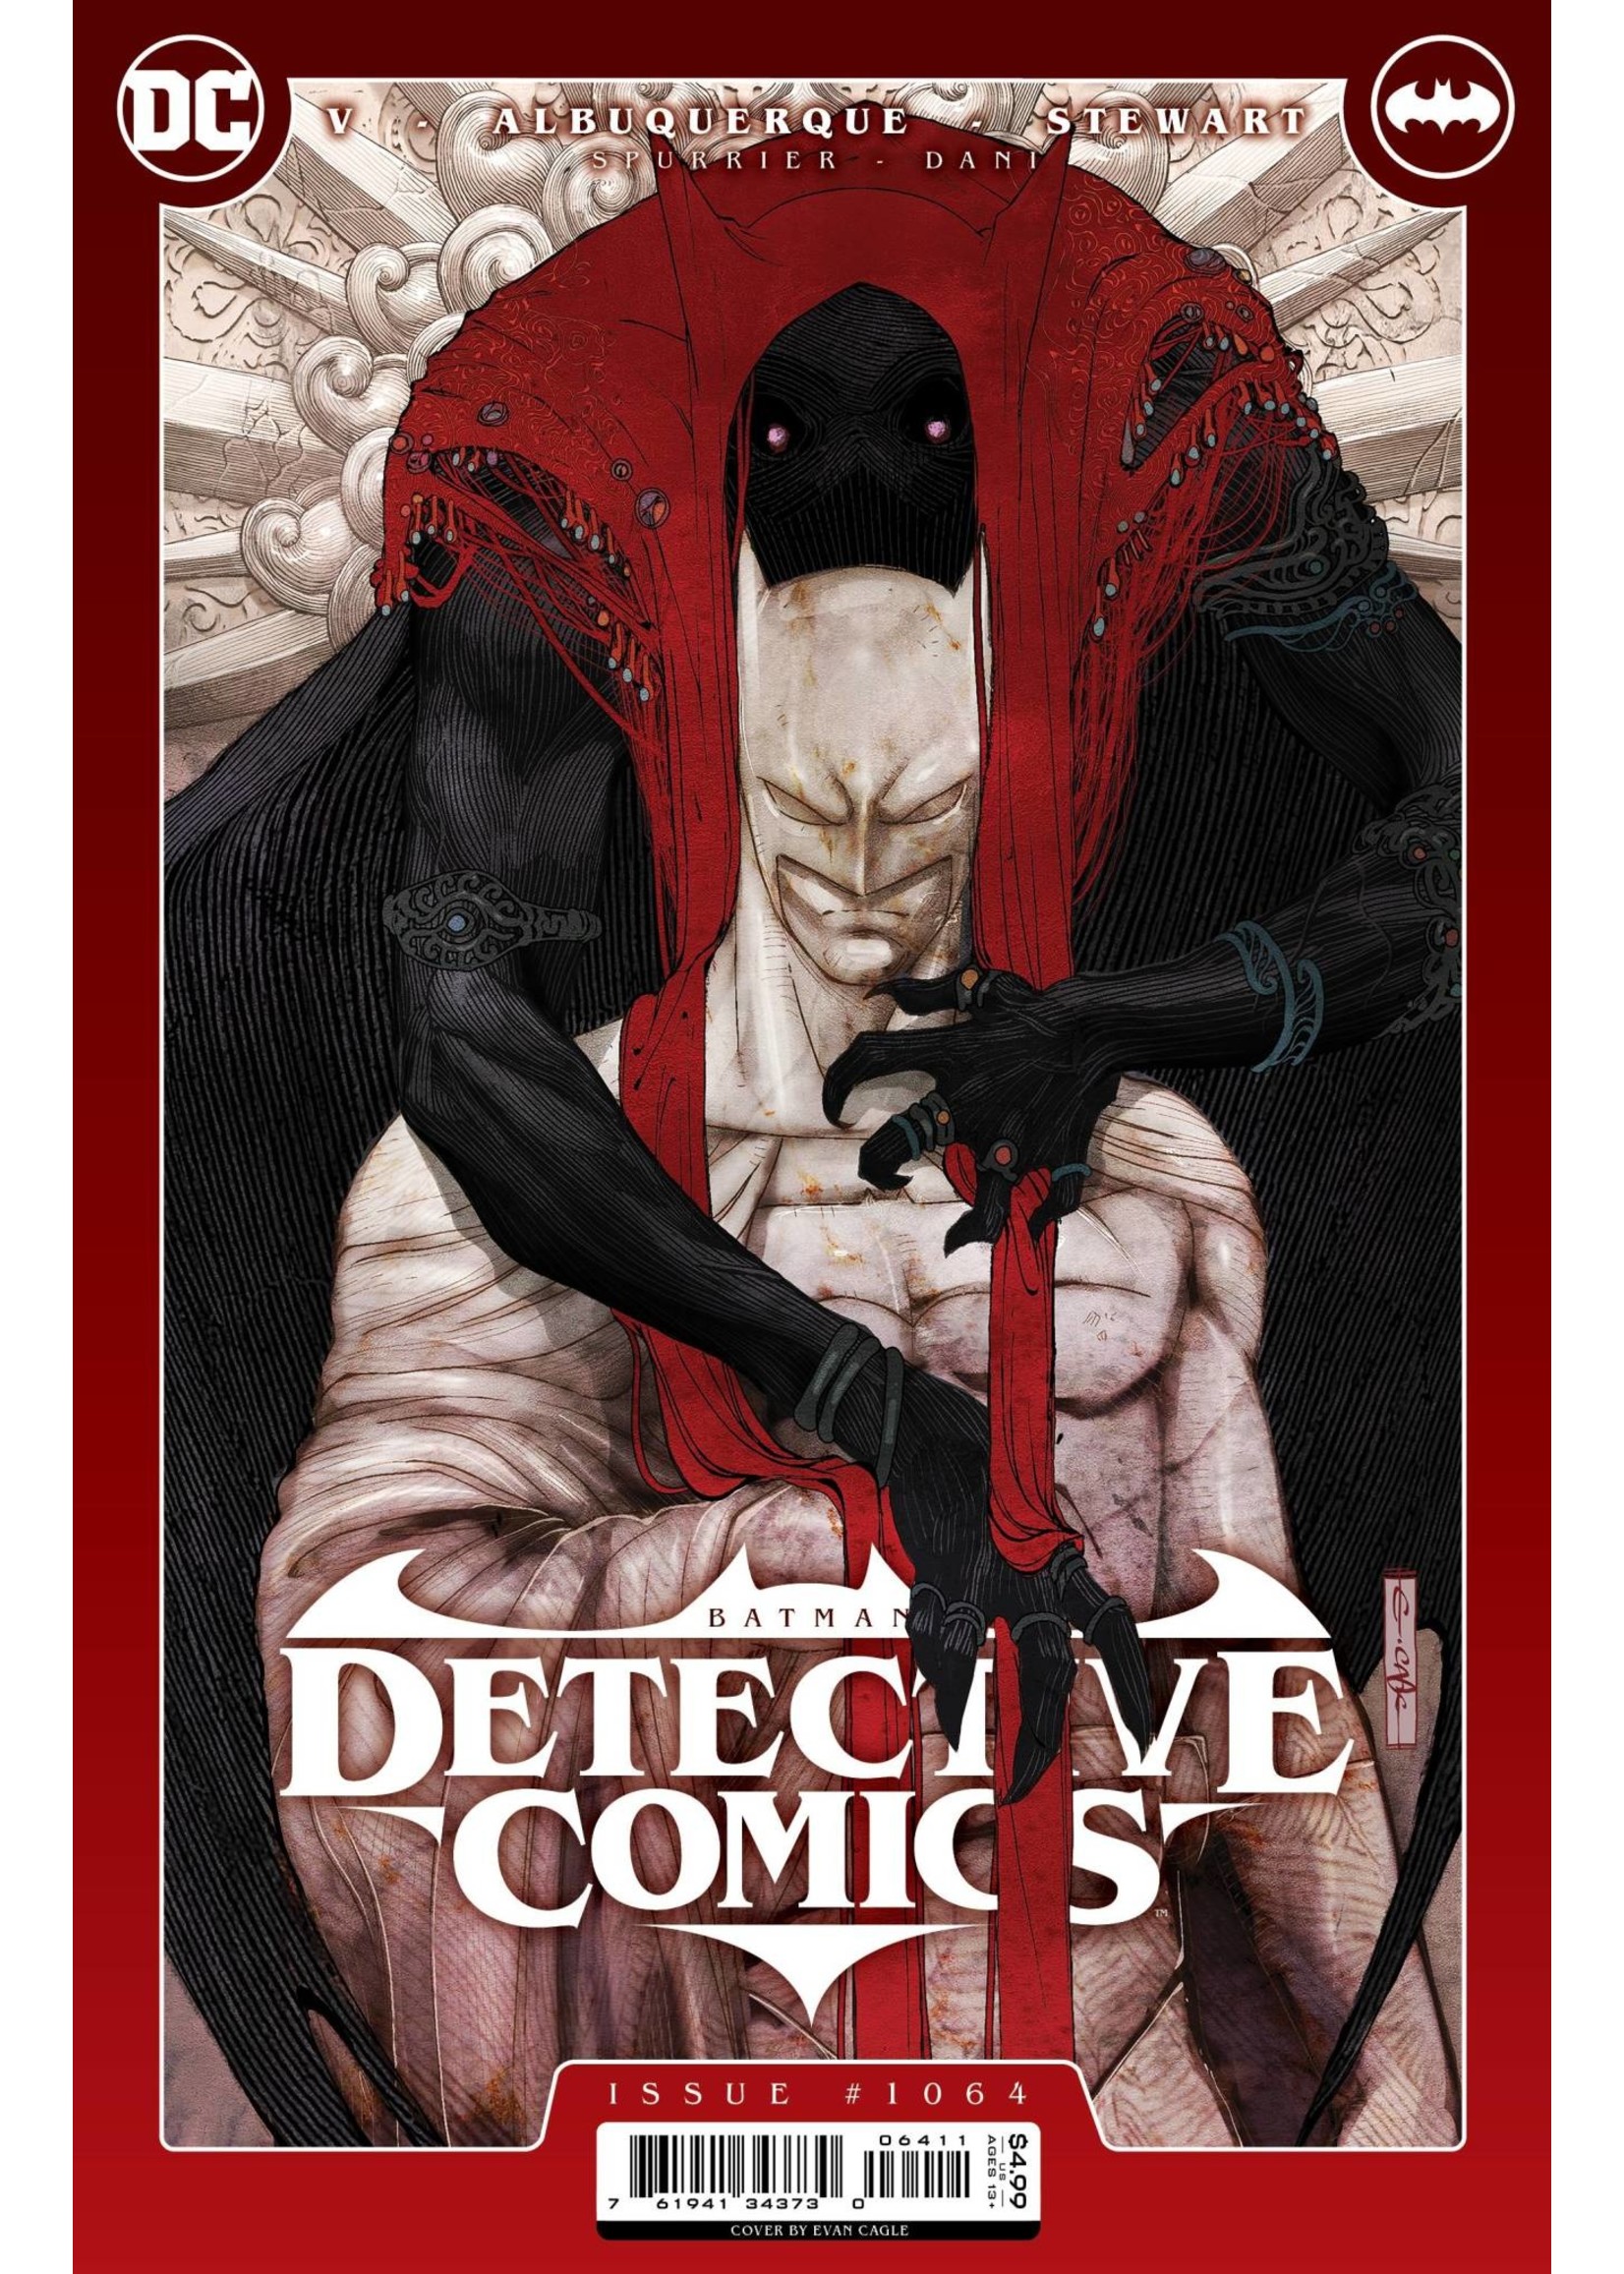 DC COMICS DETECTIVE COMICS #1064